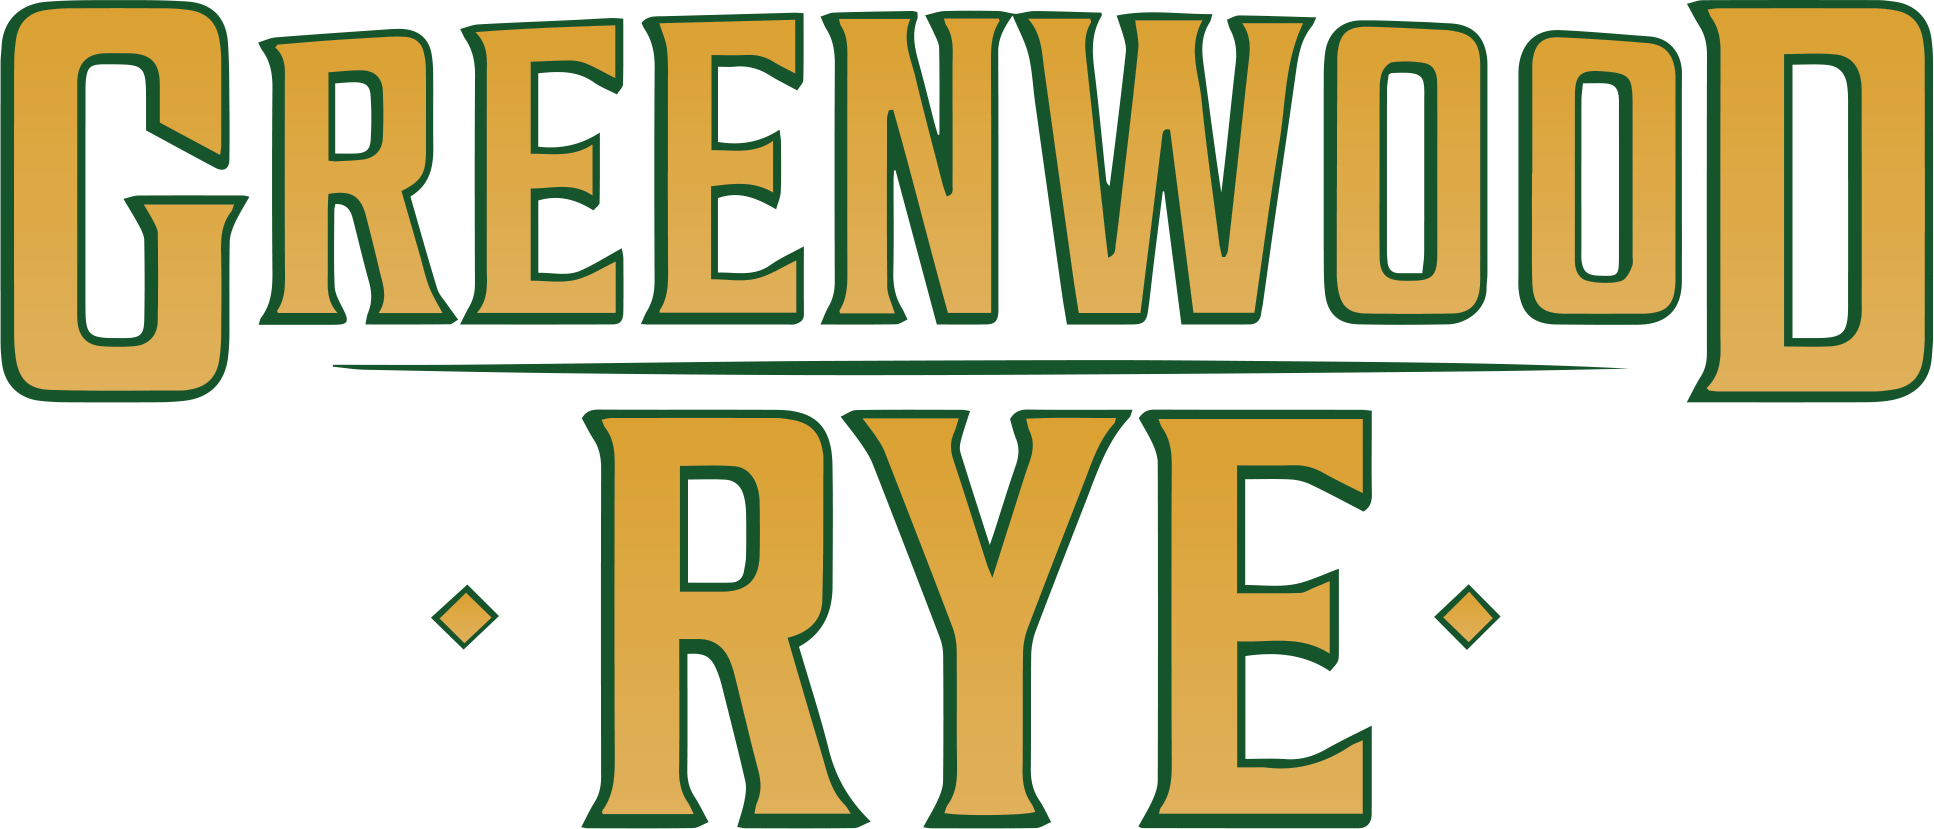 Greenwood Rye